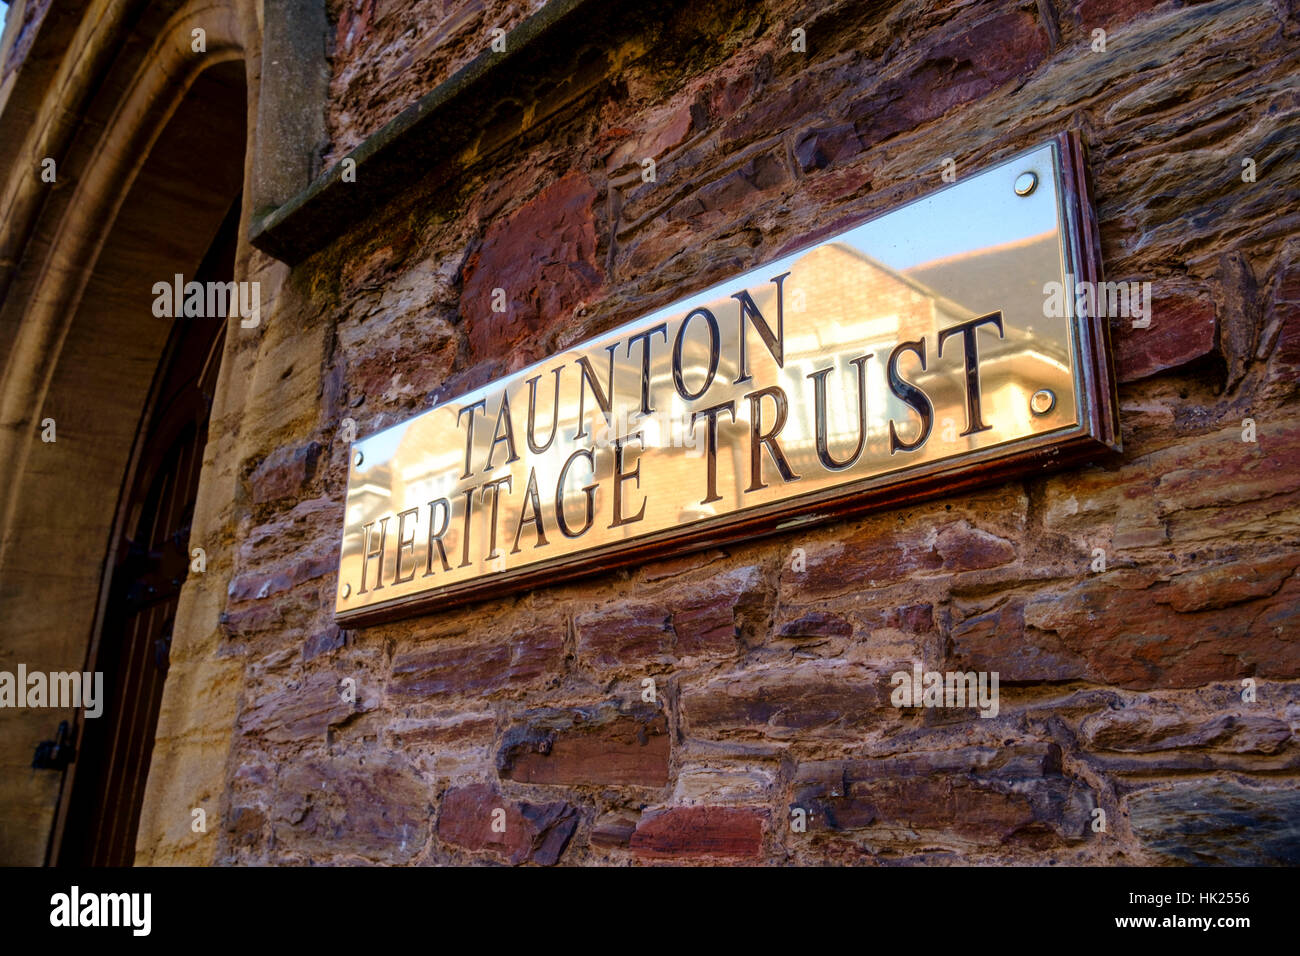 La ville du comté de Taunton Somerset Angleterre Taunton Heritage Trust signer Banque D'Images